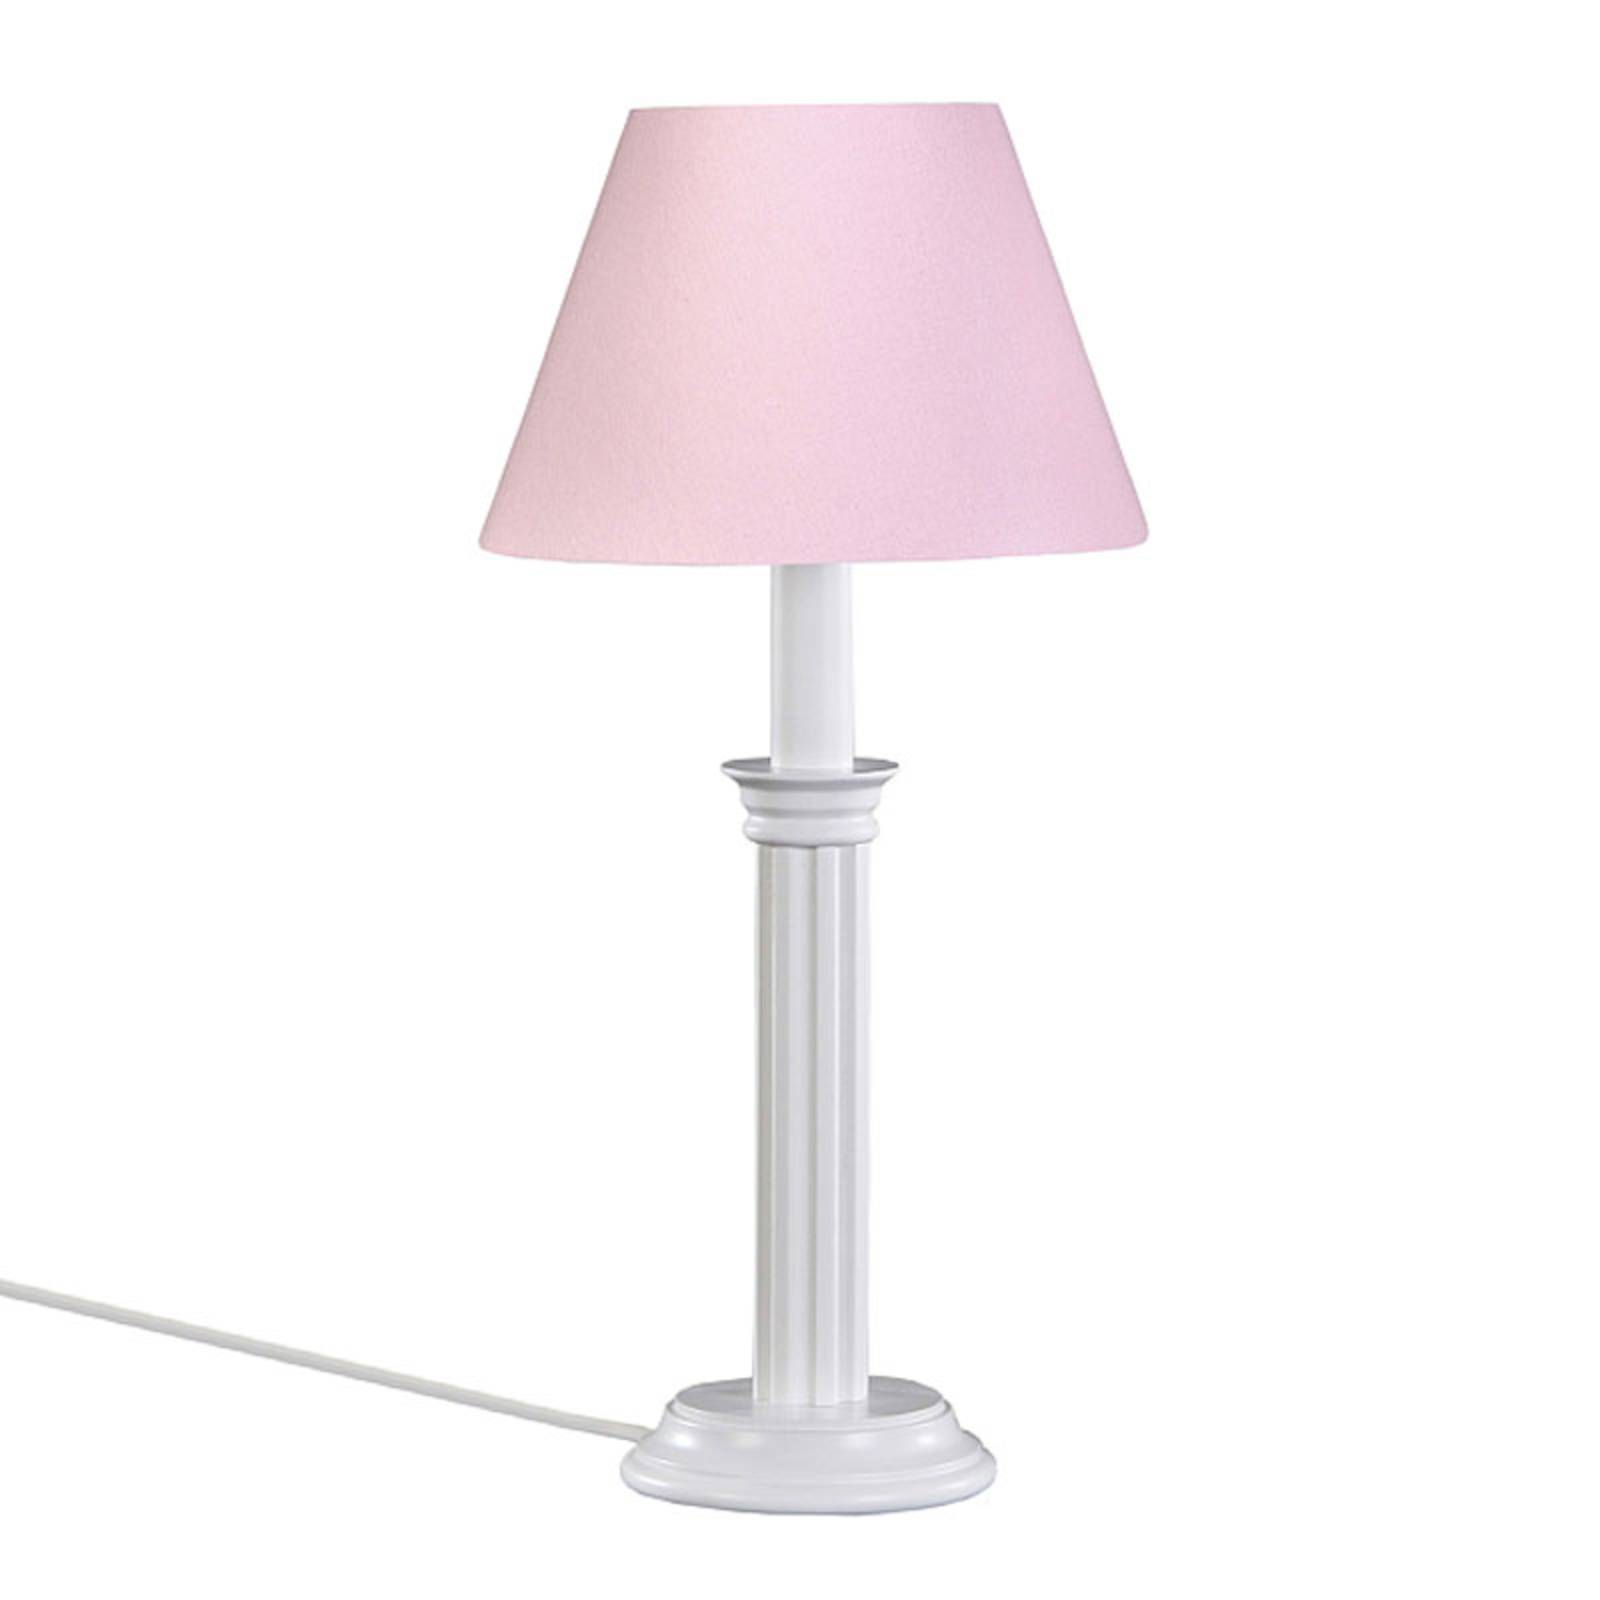 Image of Lampe à poser Klara rosée 4003028306129